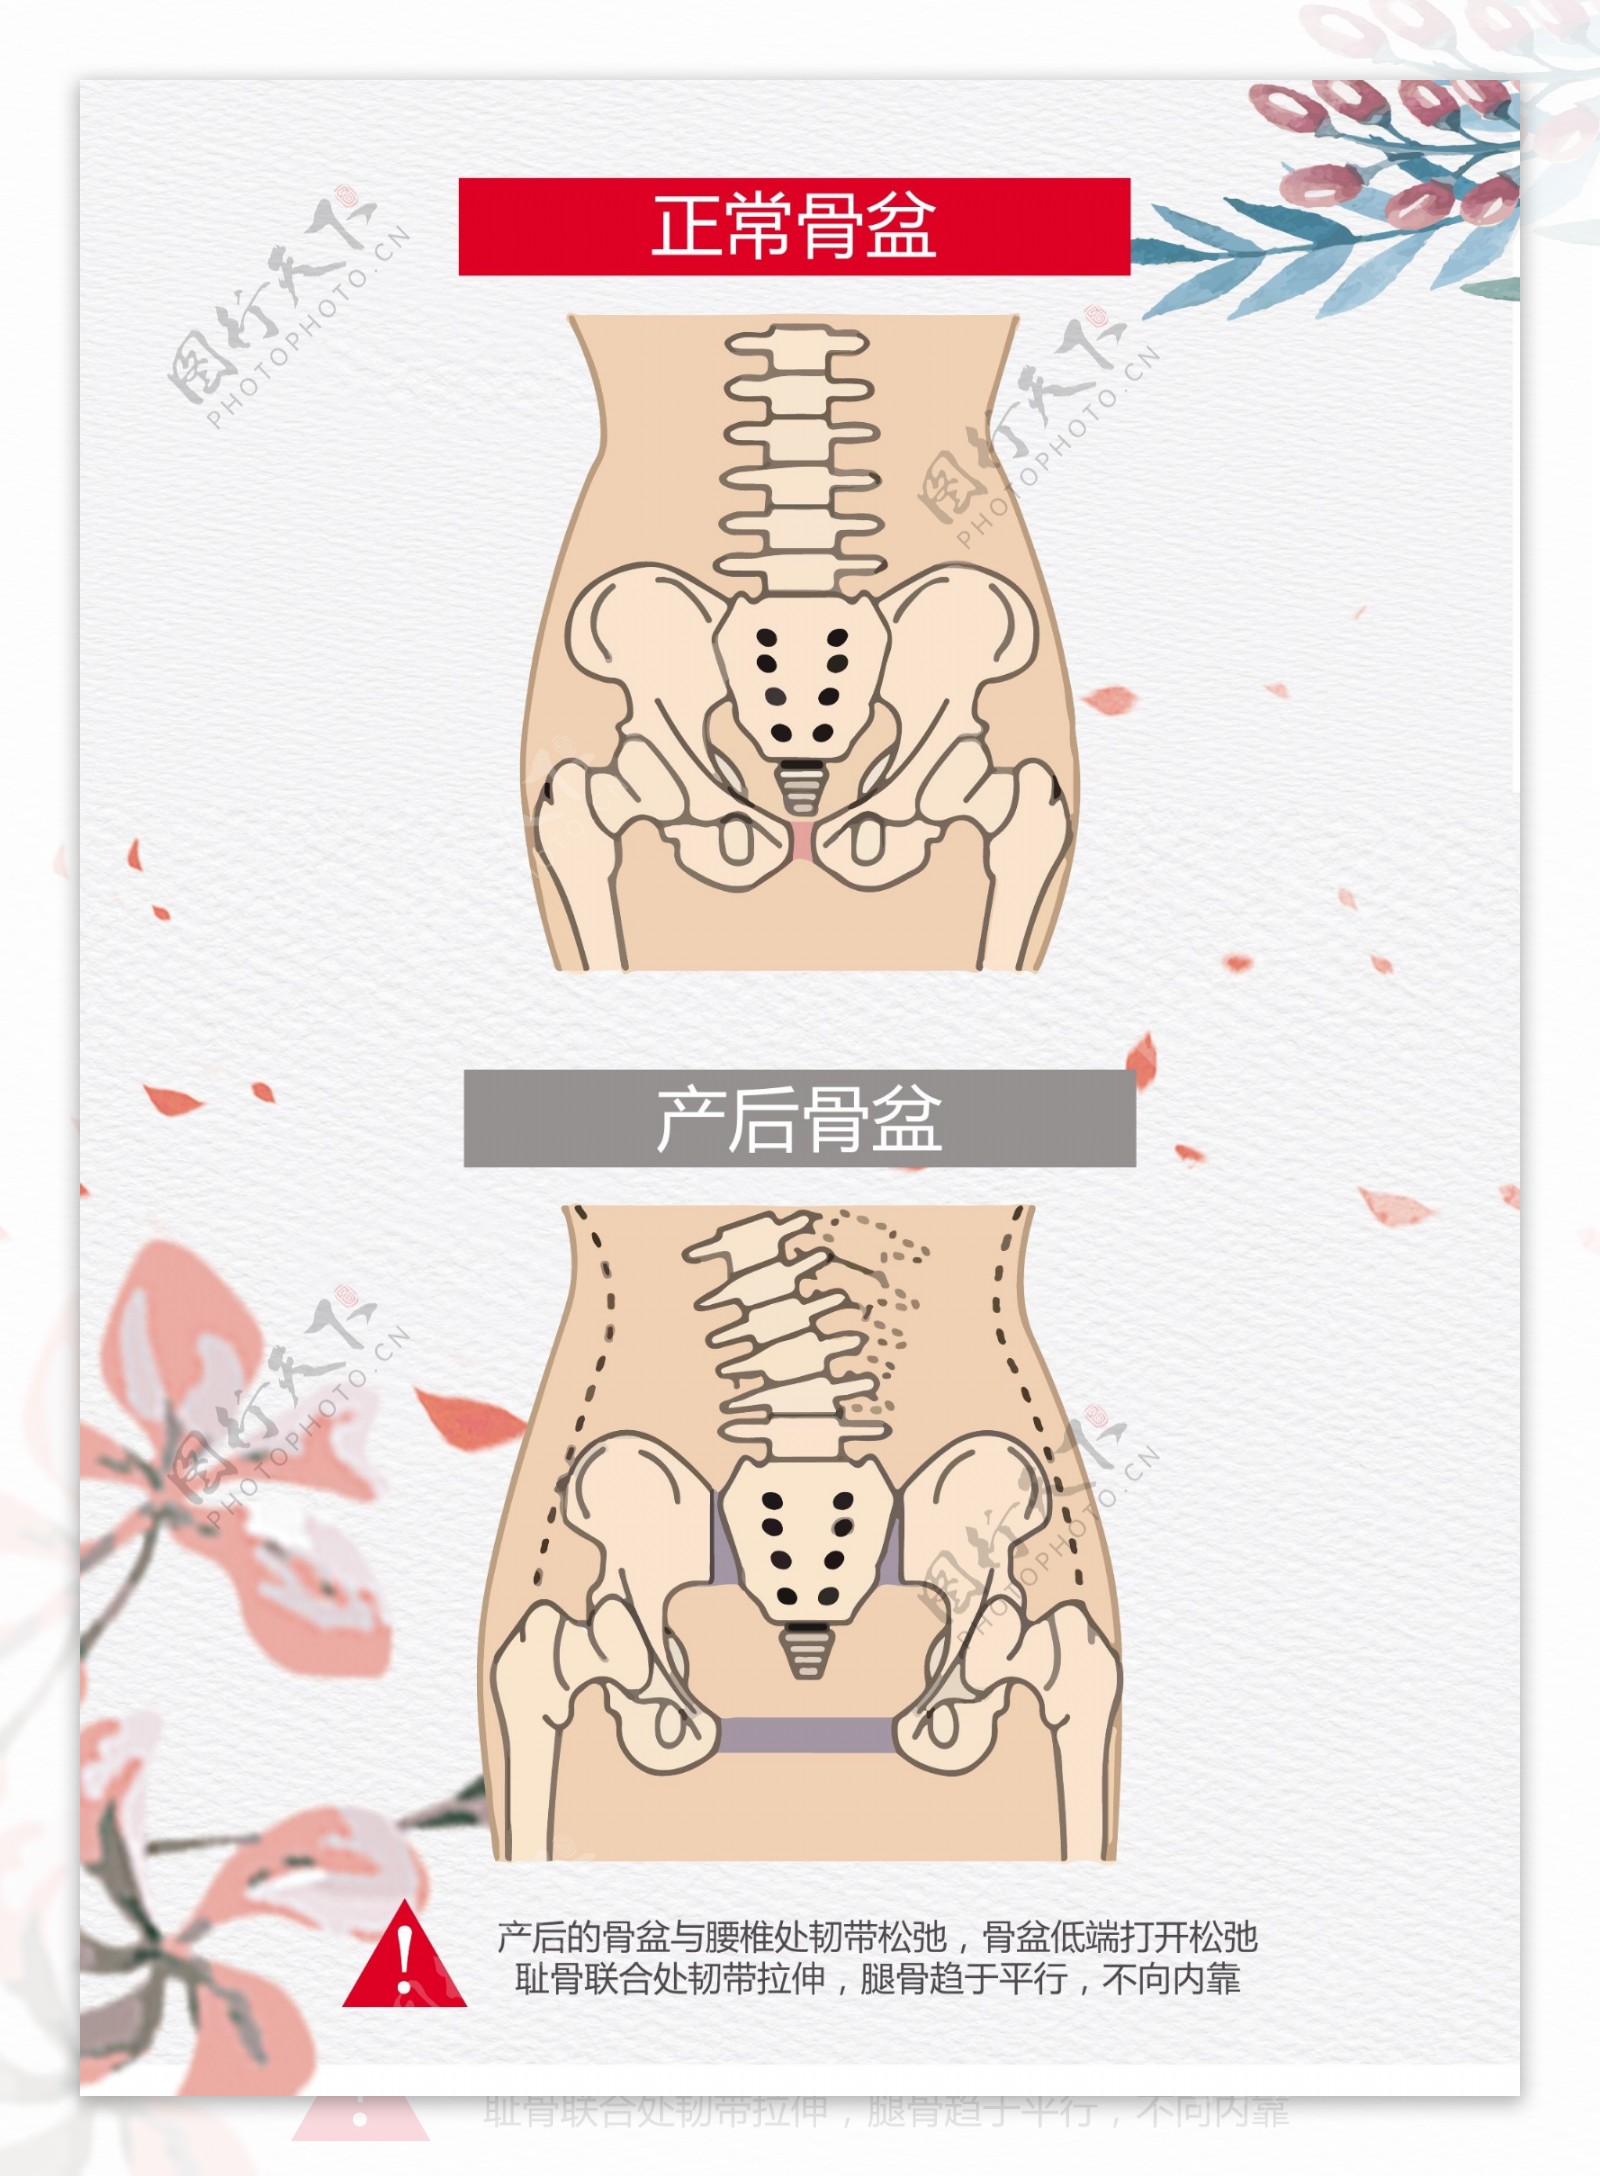 女性骨盆(前面观)-系统解剖学图谱-医学